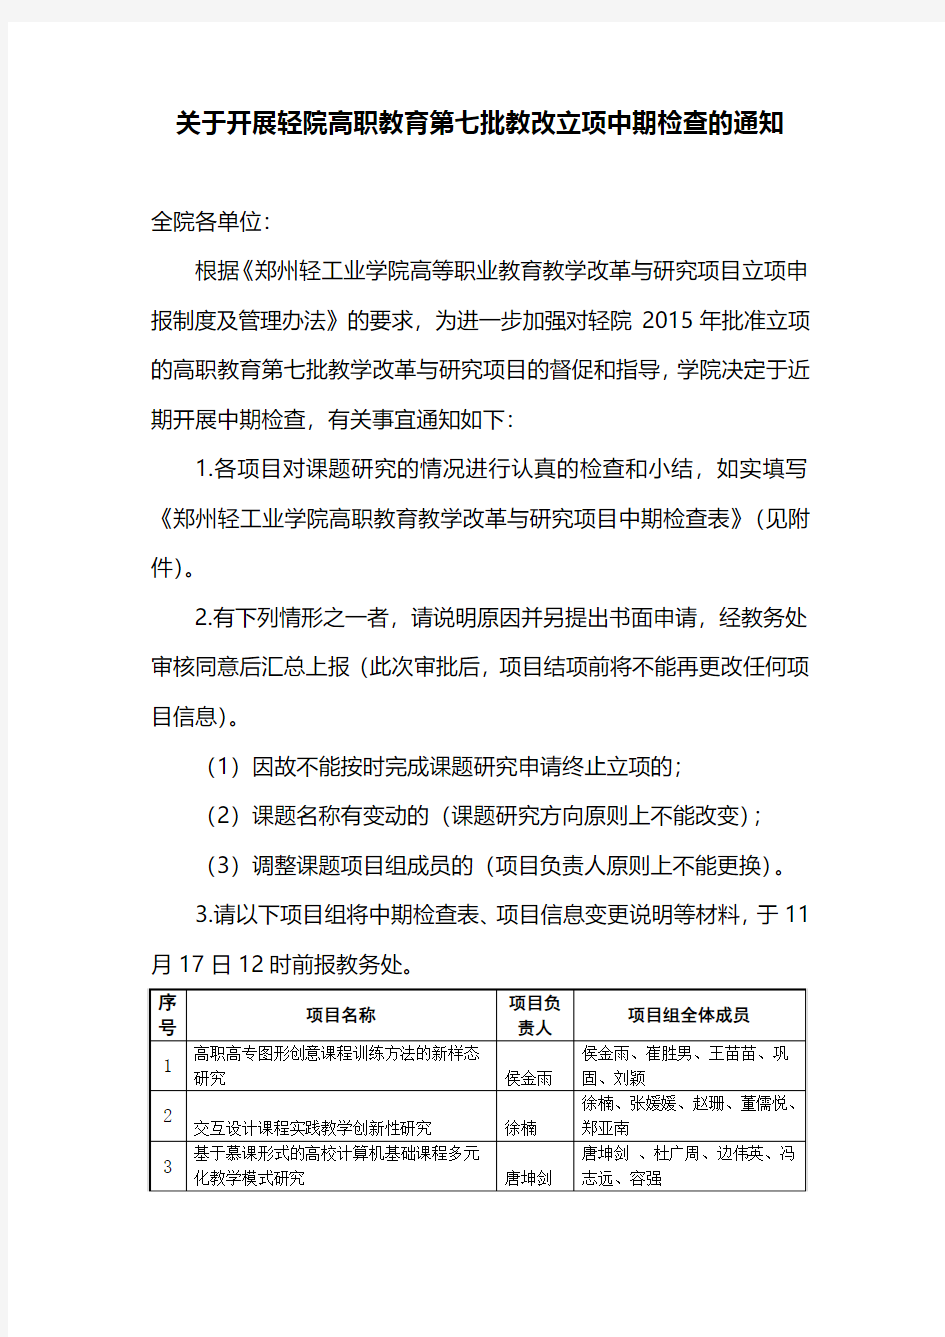 郑州轻工业学院高职教育教学改革与研究项目中期检查表